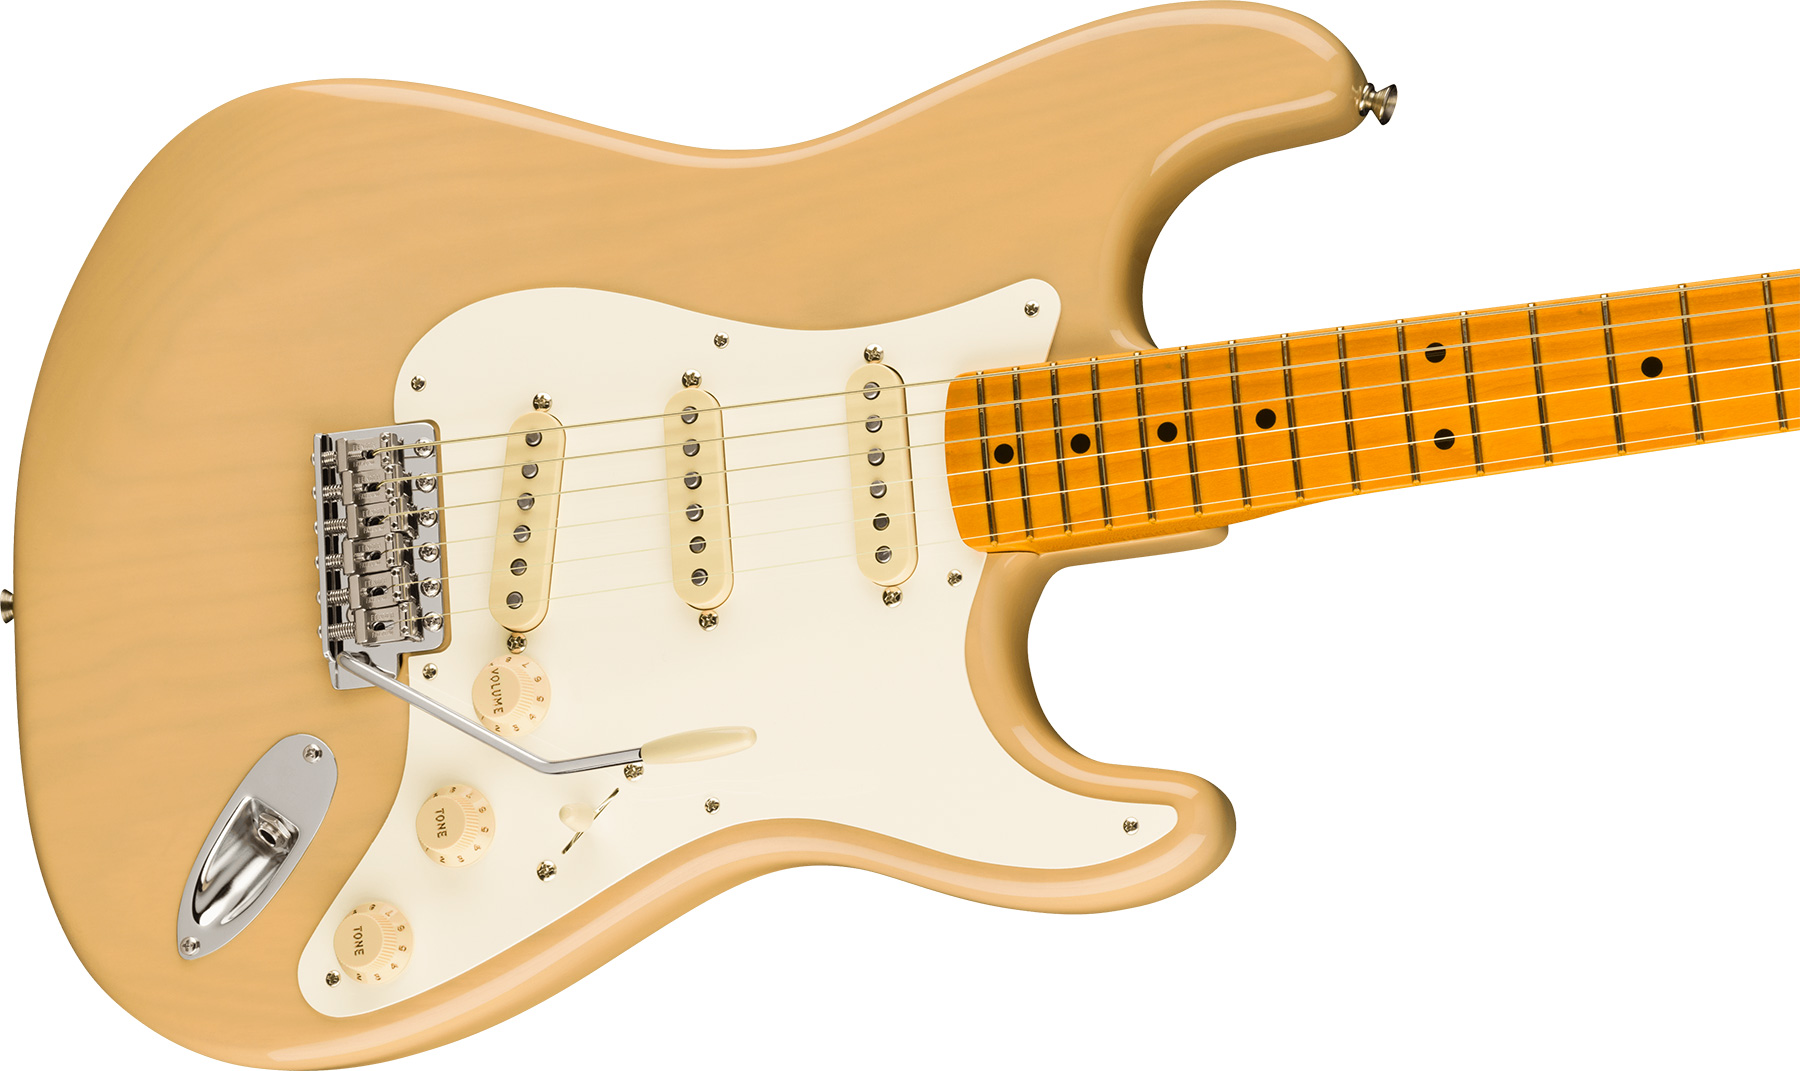 Fender Strat 1957 American Vintage Ii Usa 3s Trem Mn - Vintage Blonde - Str shape electric guitar - Variation 2